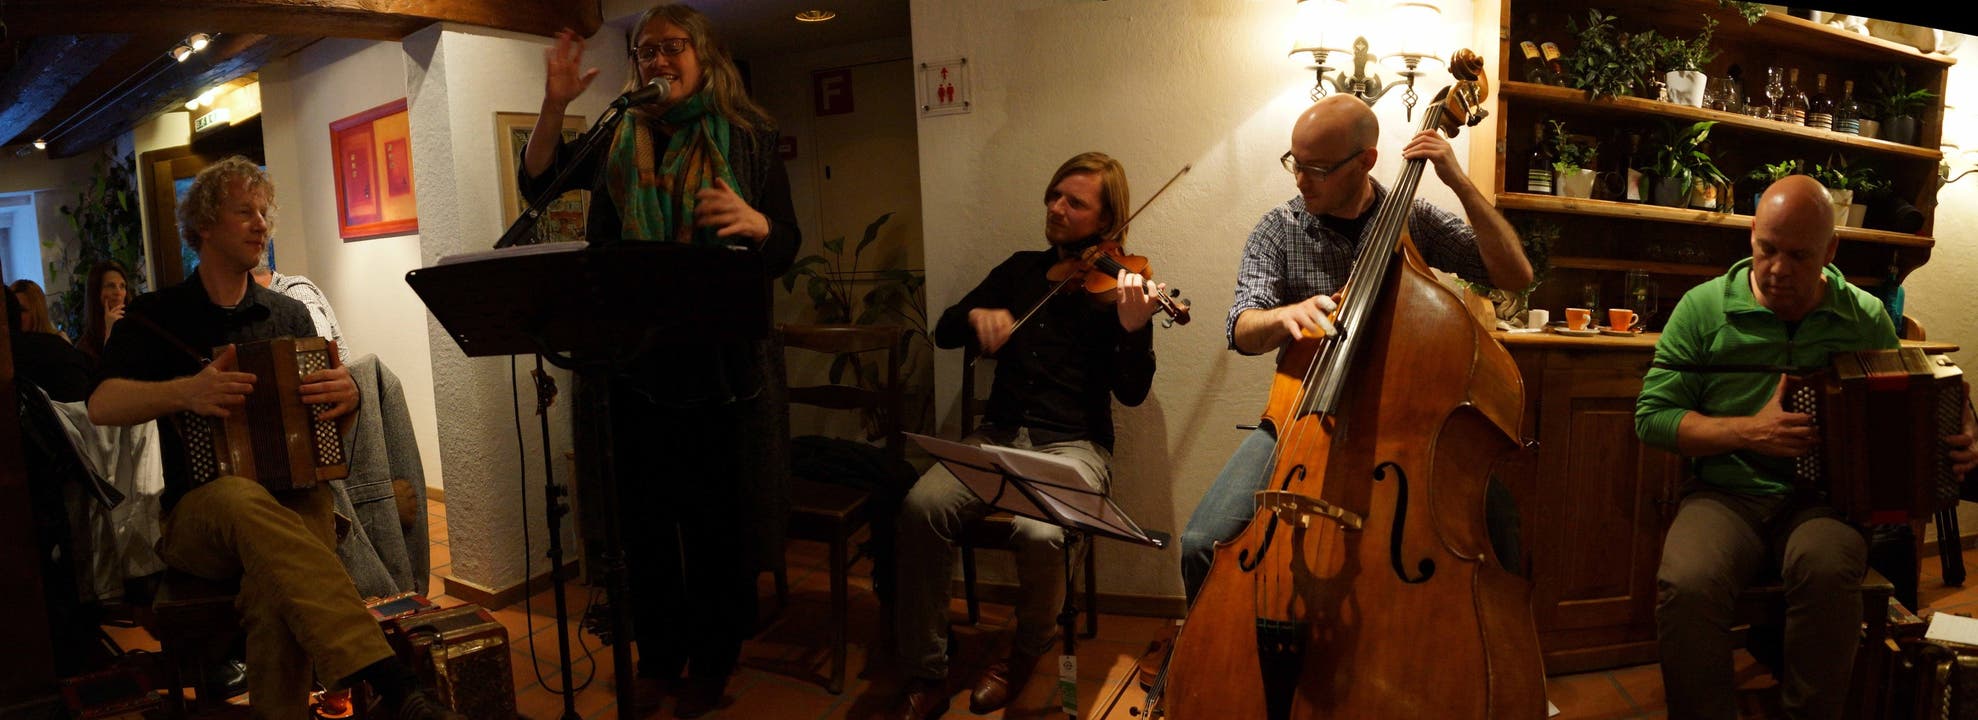 Spielten im Gasthof zur Waag Bad Zurzach rätoromanische Volkslieder - Trio Pflanzplätz Violinist Andy Gabriel und Sängerin Corin Curschellas